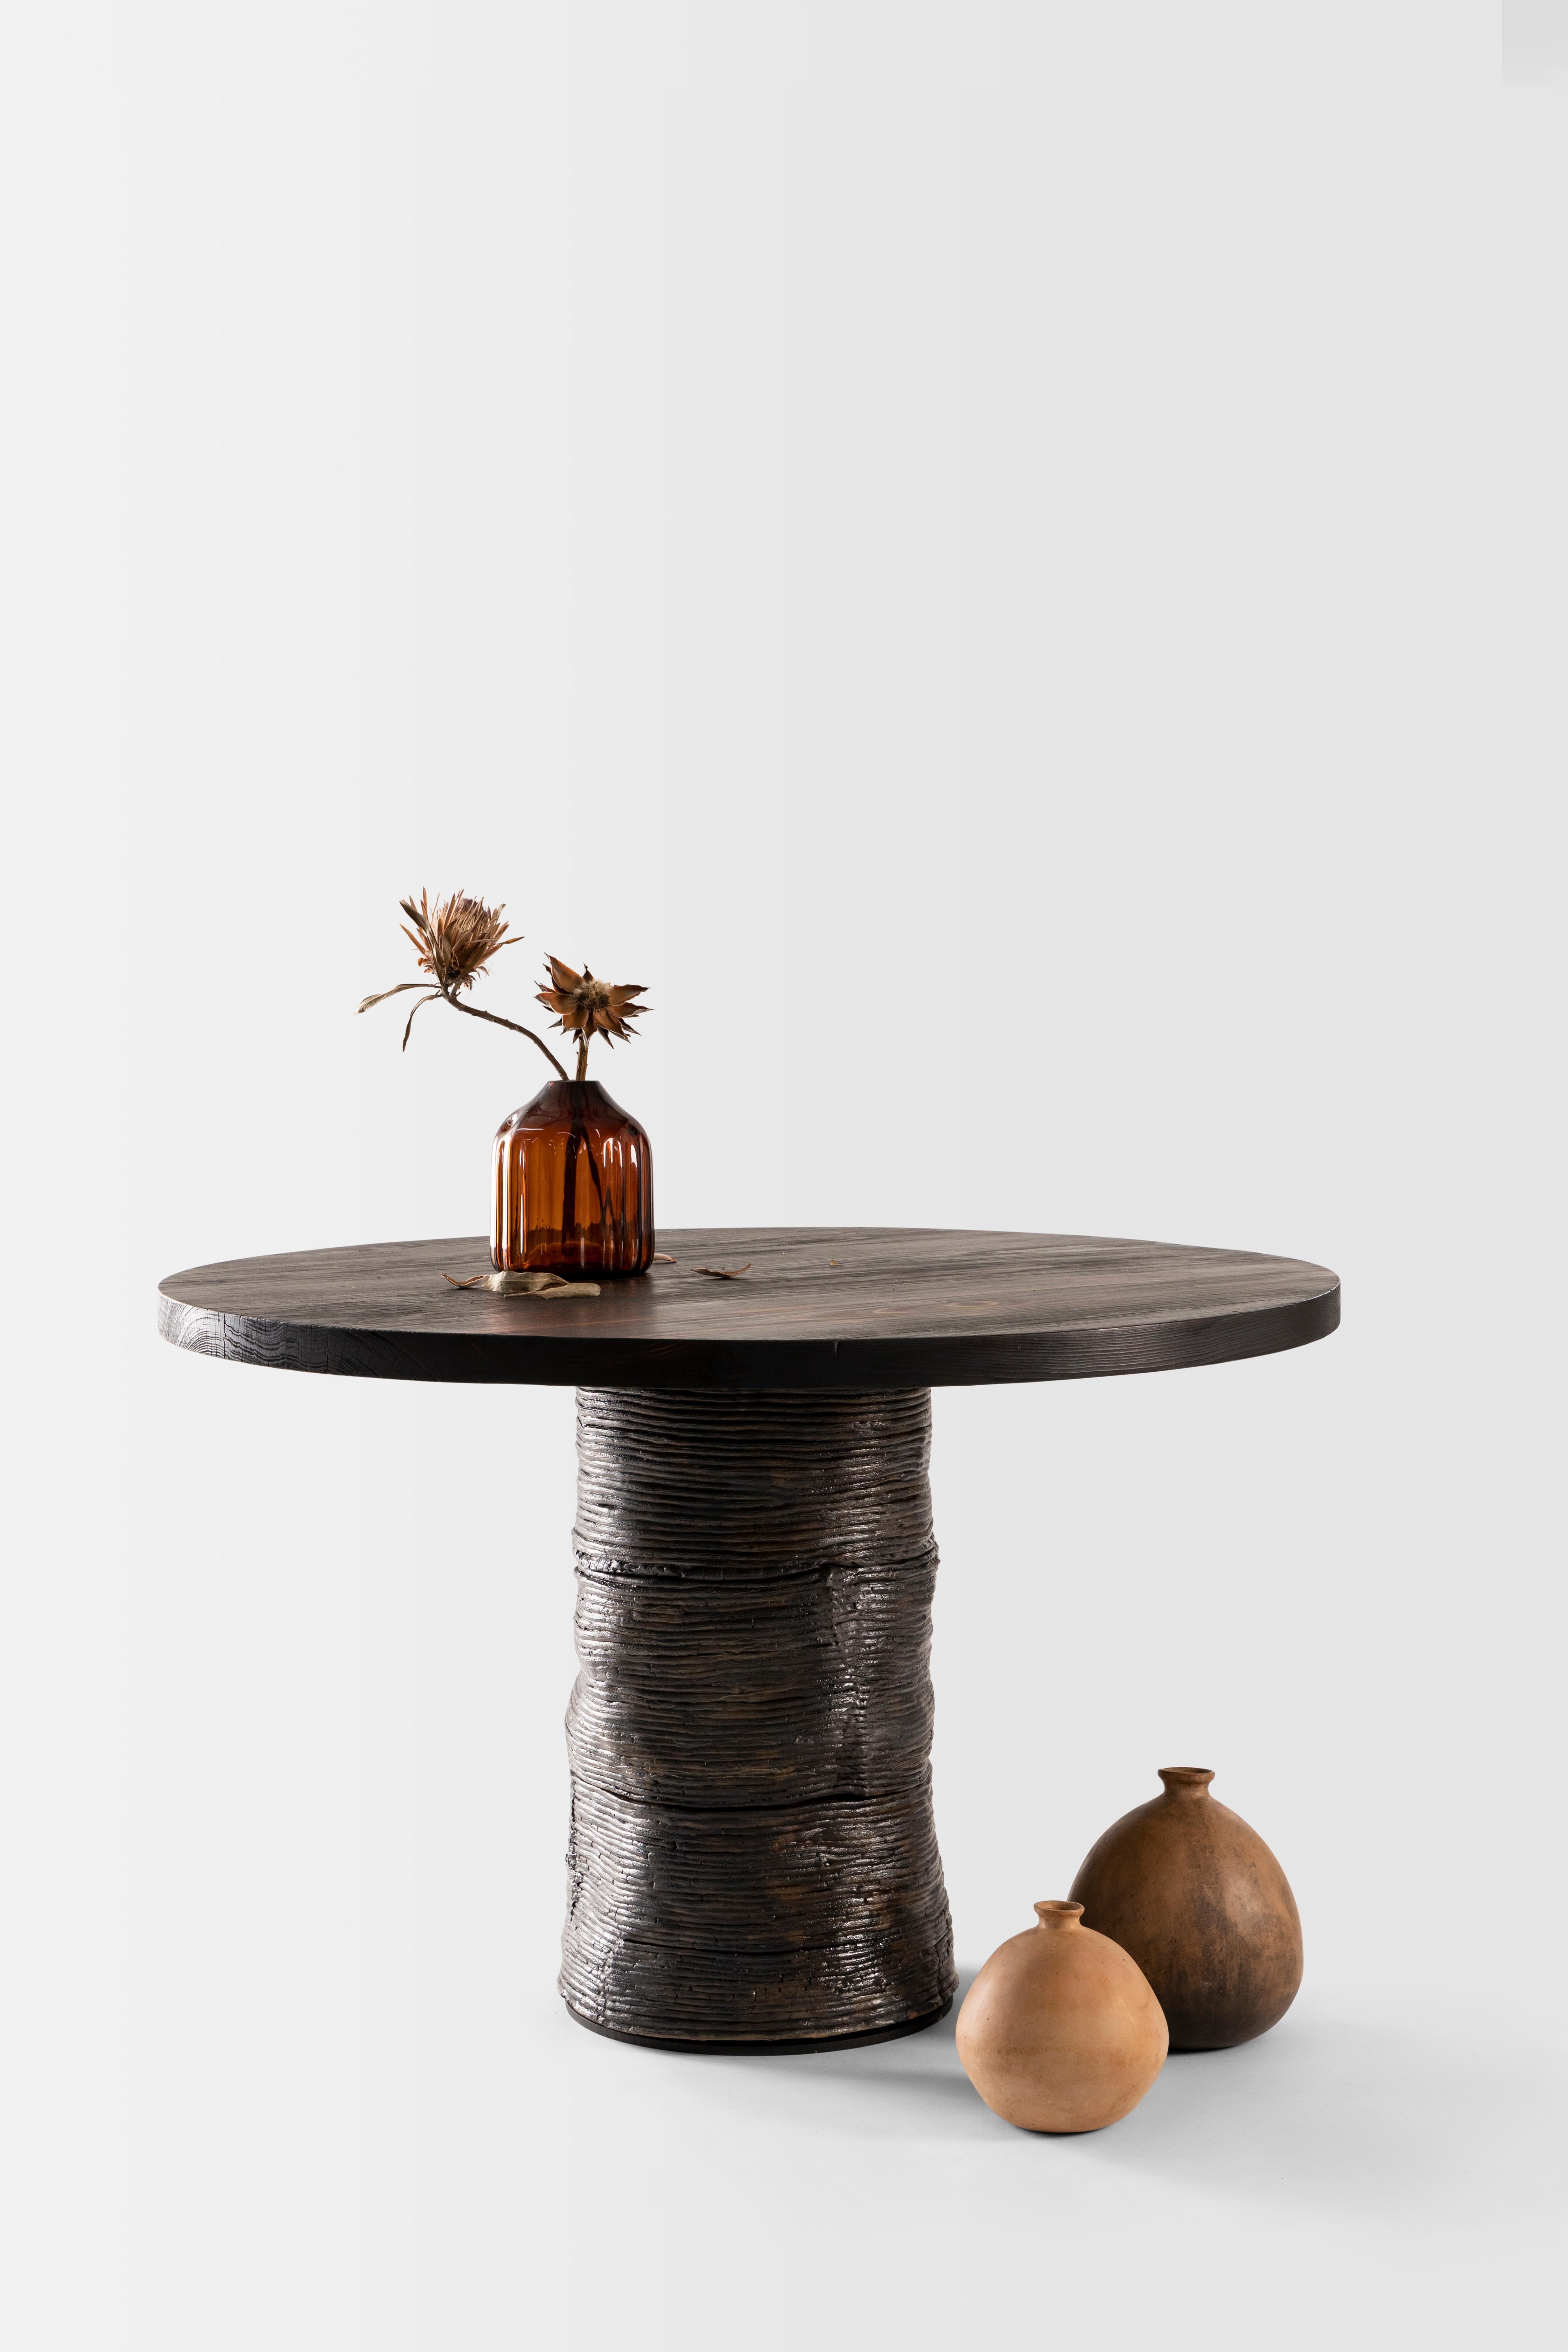 Als Hommage an die unendlichen Zyklen der Natur kontrastiert der Tisch Lazo eine Platte aus gebranntem Holz mit einem Sockel aus kupfergestrahlter Terrakotta-Spirale und ist ein Gesprächsobjekt in
seine reinste Form. Der Name Lazo, der im Spanischen